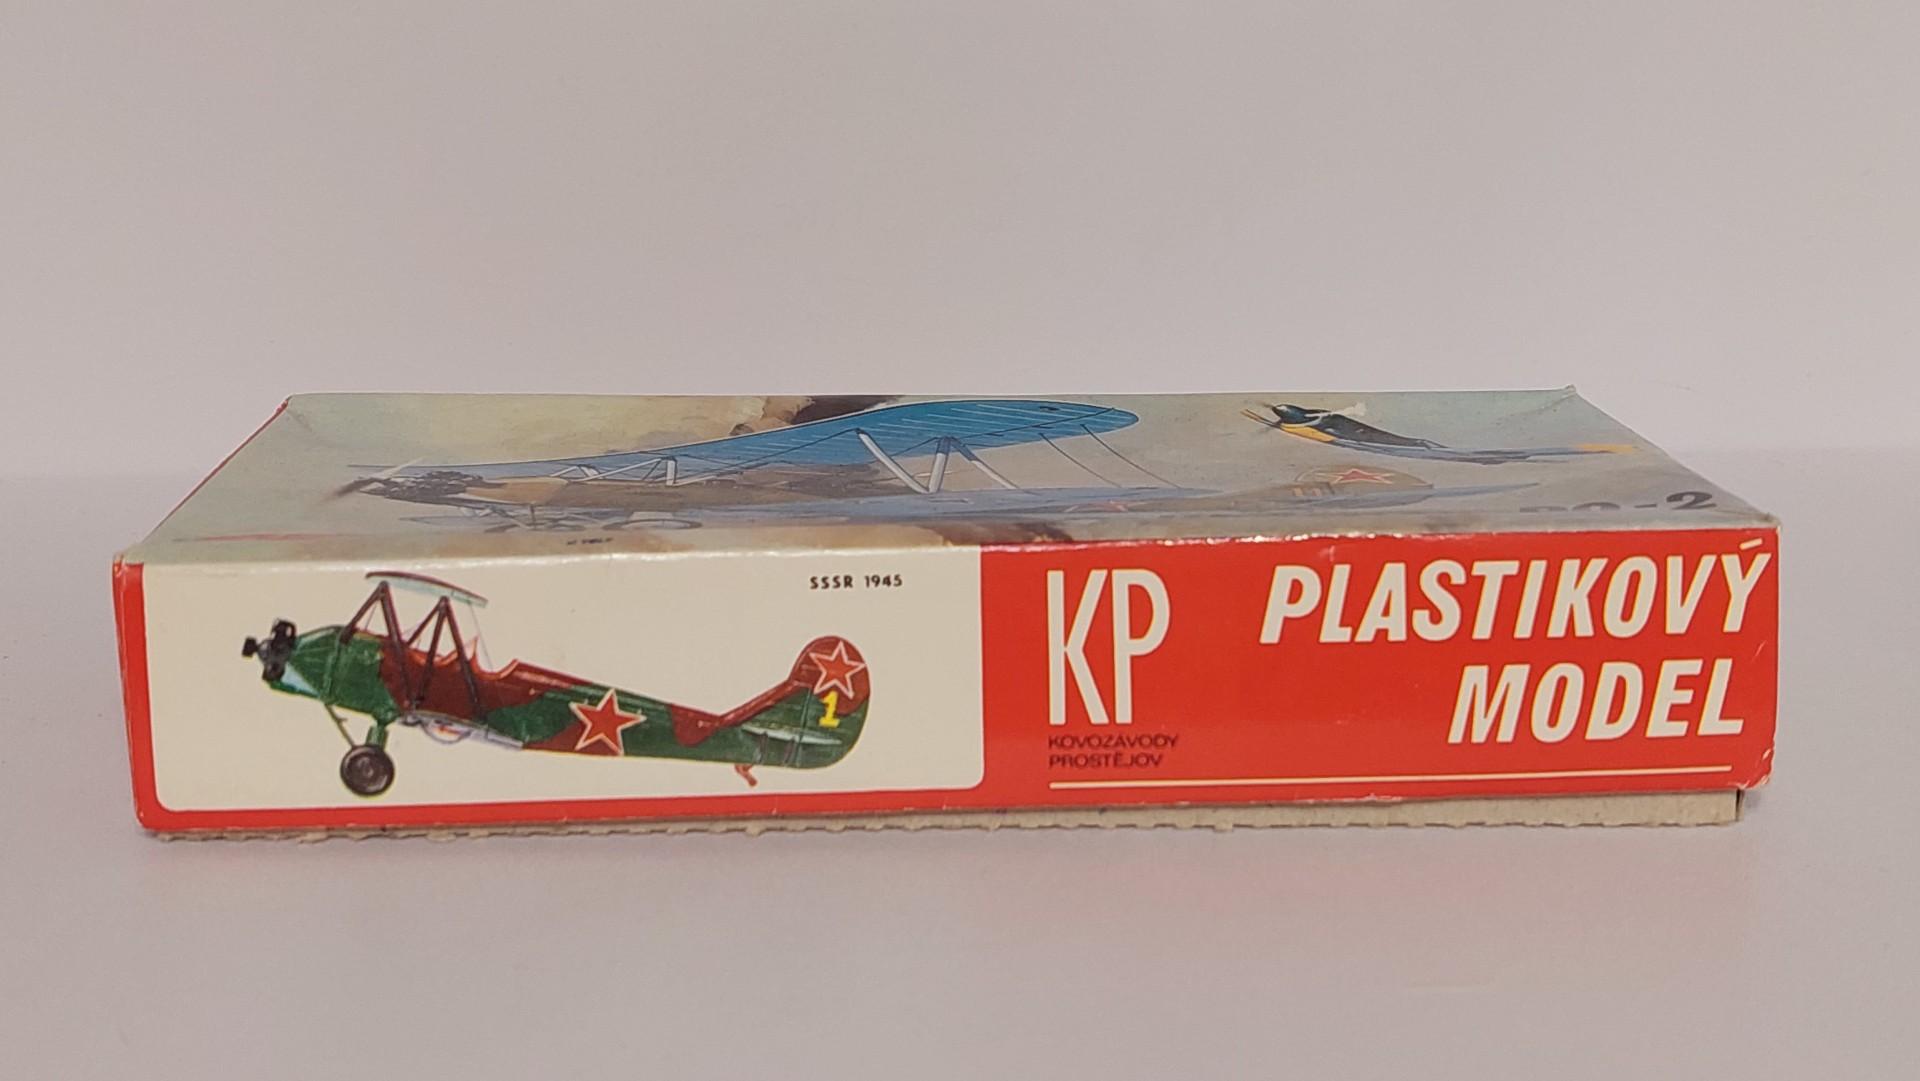 Plastikinis lektuvo modelis Polikarpov Po-2